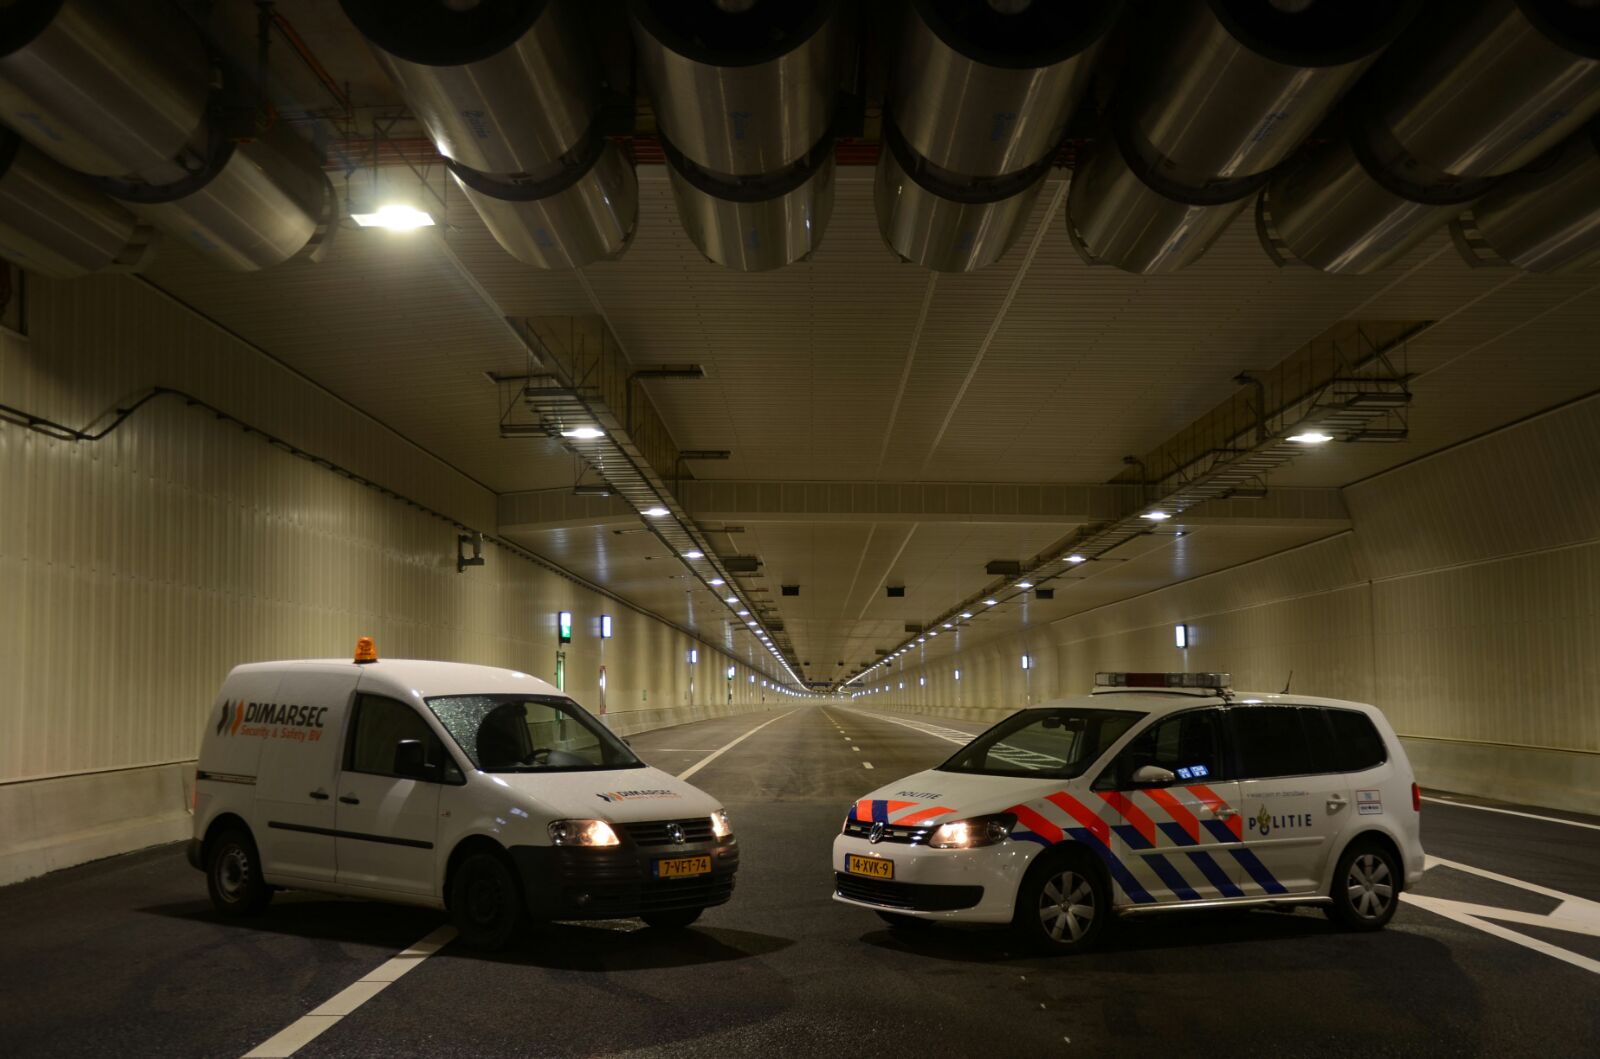 DSS politie in tunnel